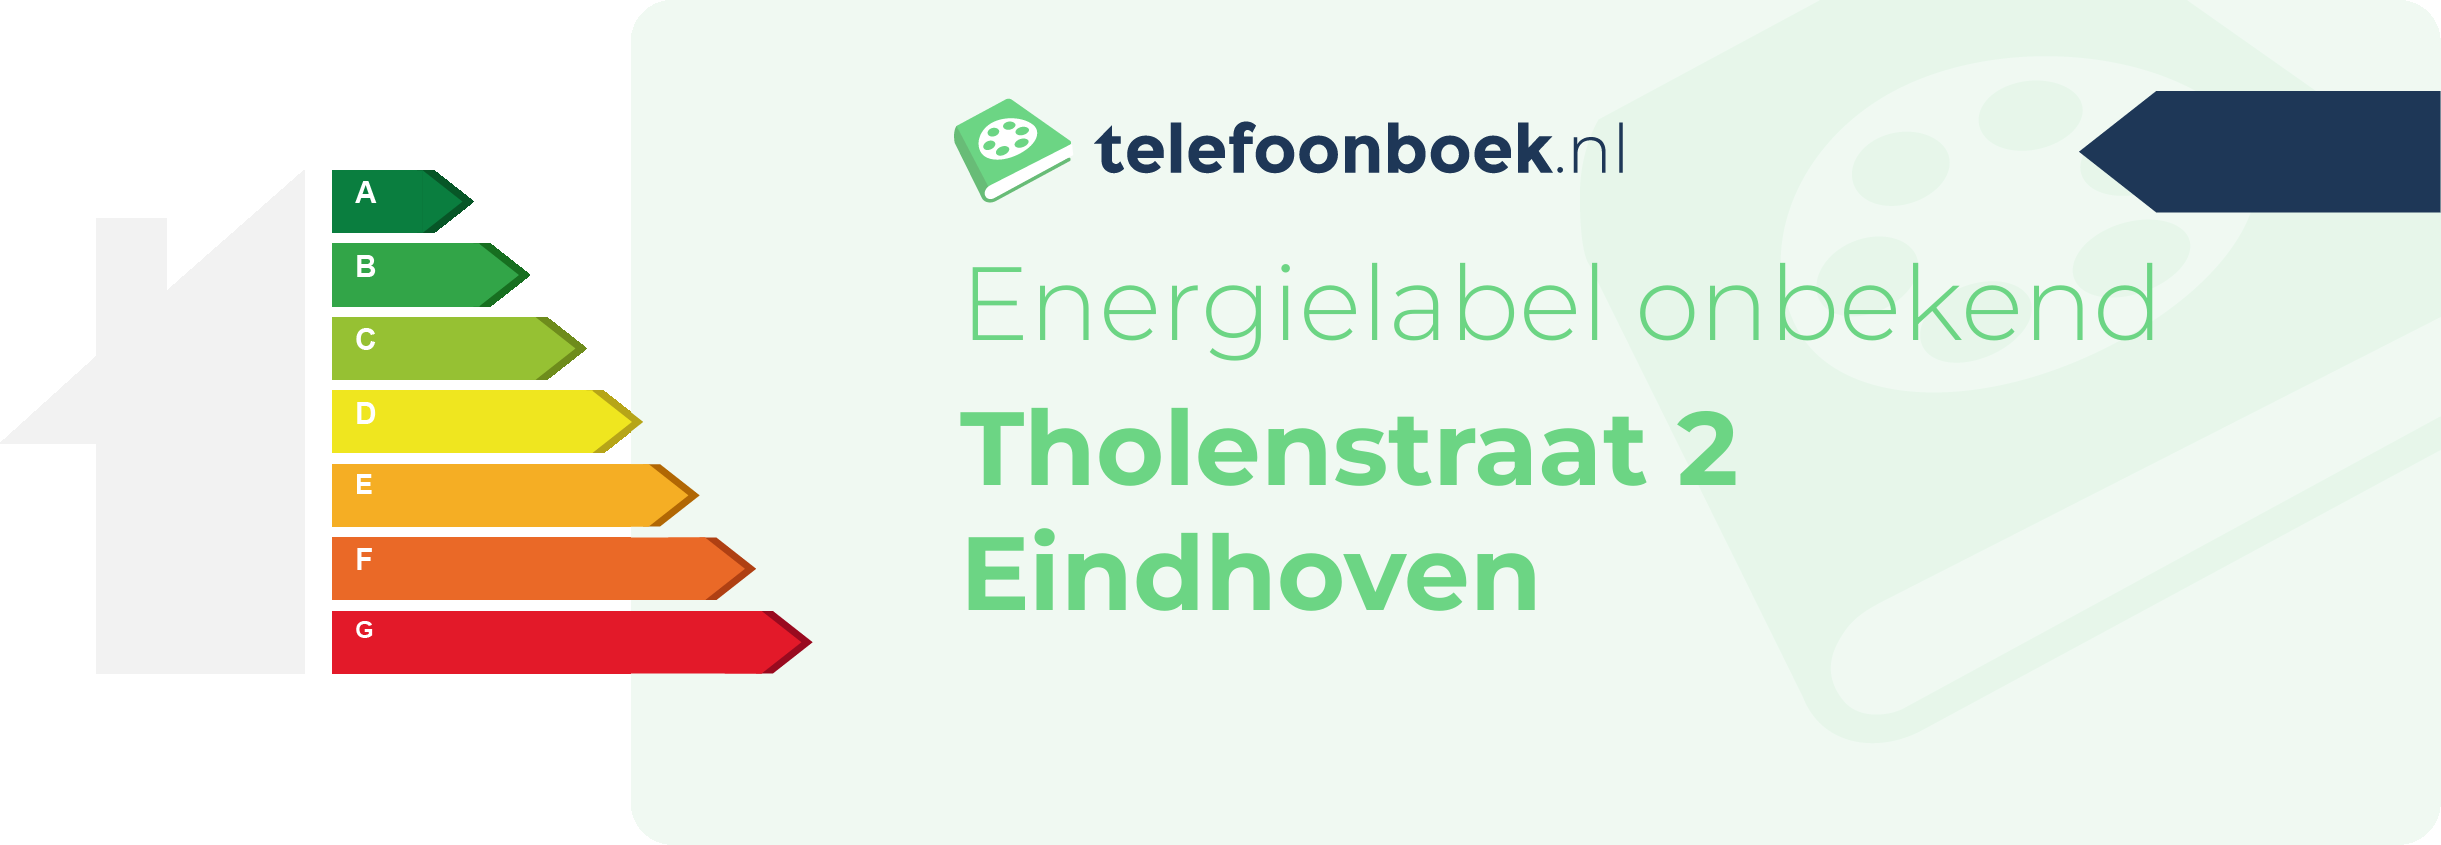 Energielabel Tholenstraat 2 Eindhoven